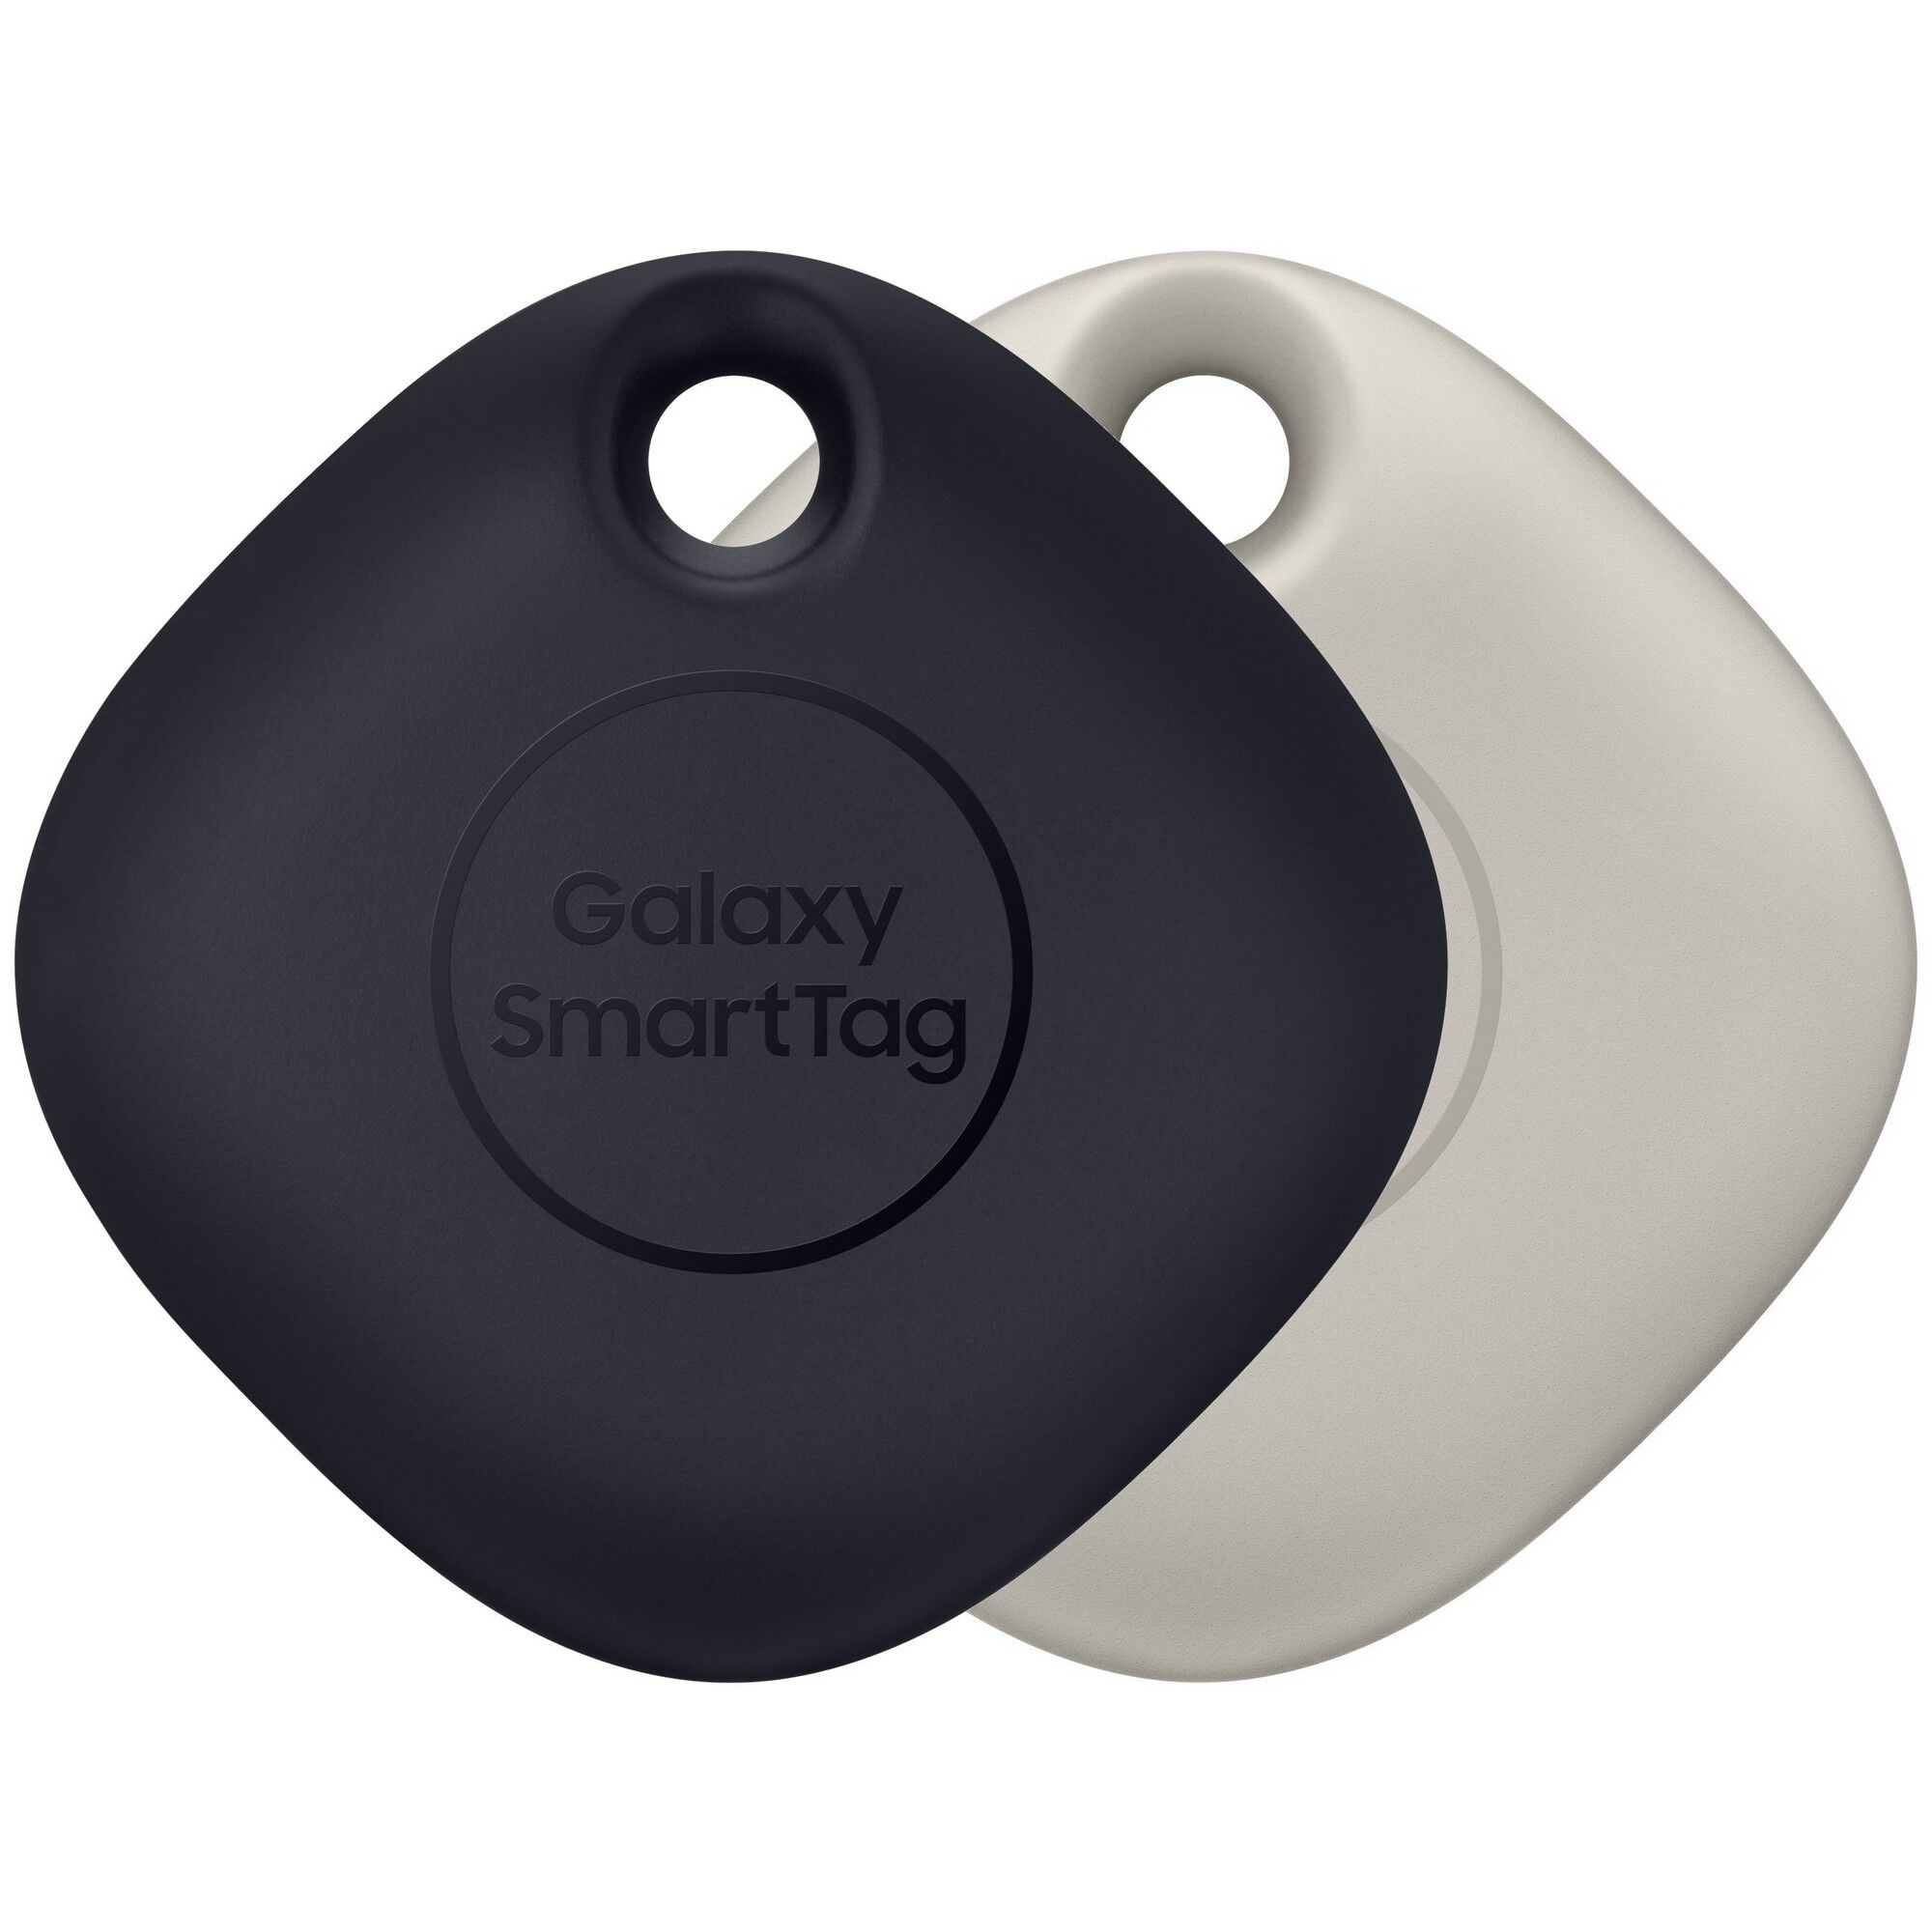 Samsung Galaxy SmartTag 2-pack - Svart & Beige